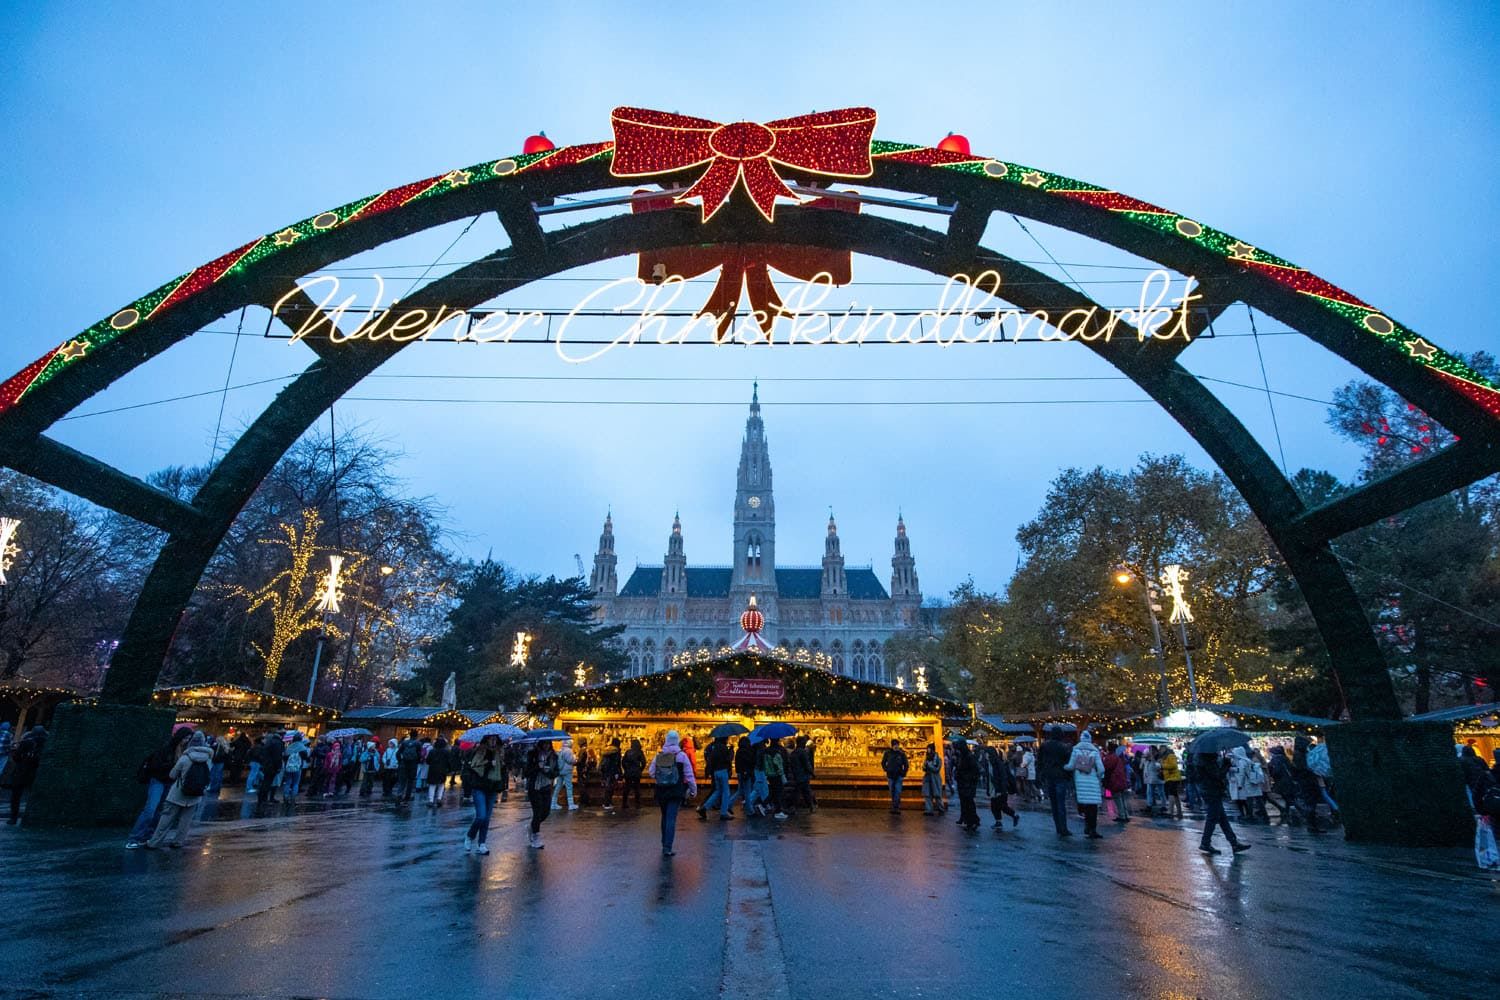 Viennese Dream Market Photo | Vienna Christmas Markets